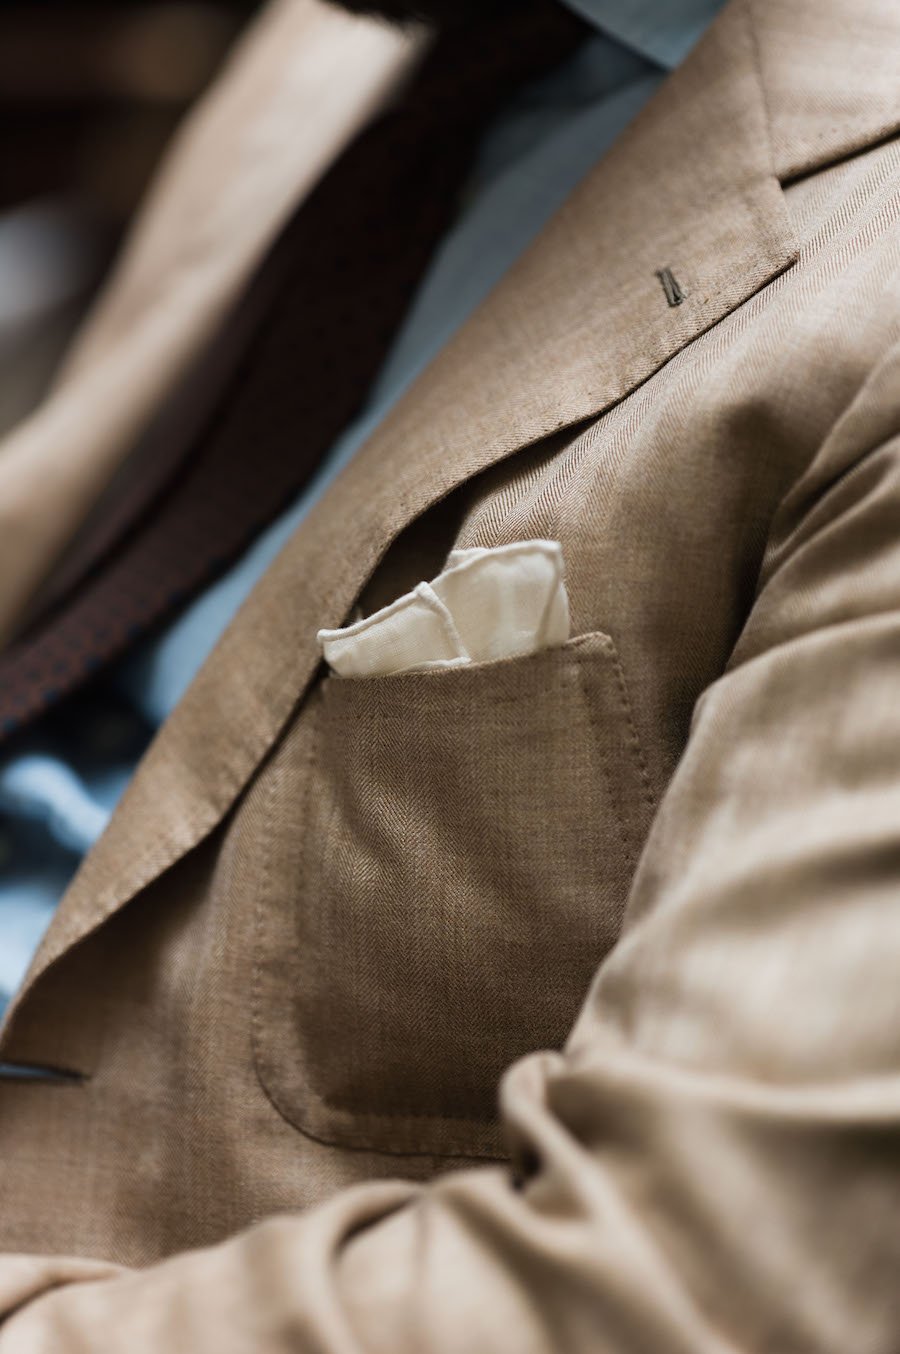 Men's Vintage Blazer, Elegant Flap Pocket Single Breasted Suit Jacket For  Fall Winter